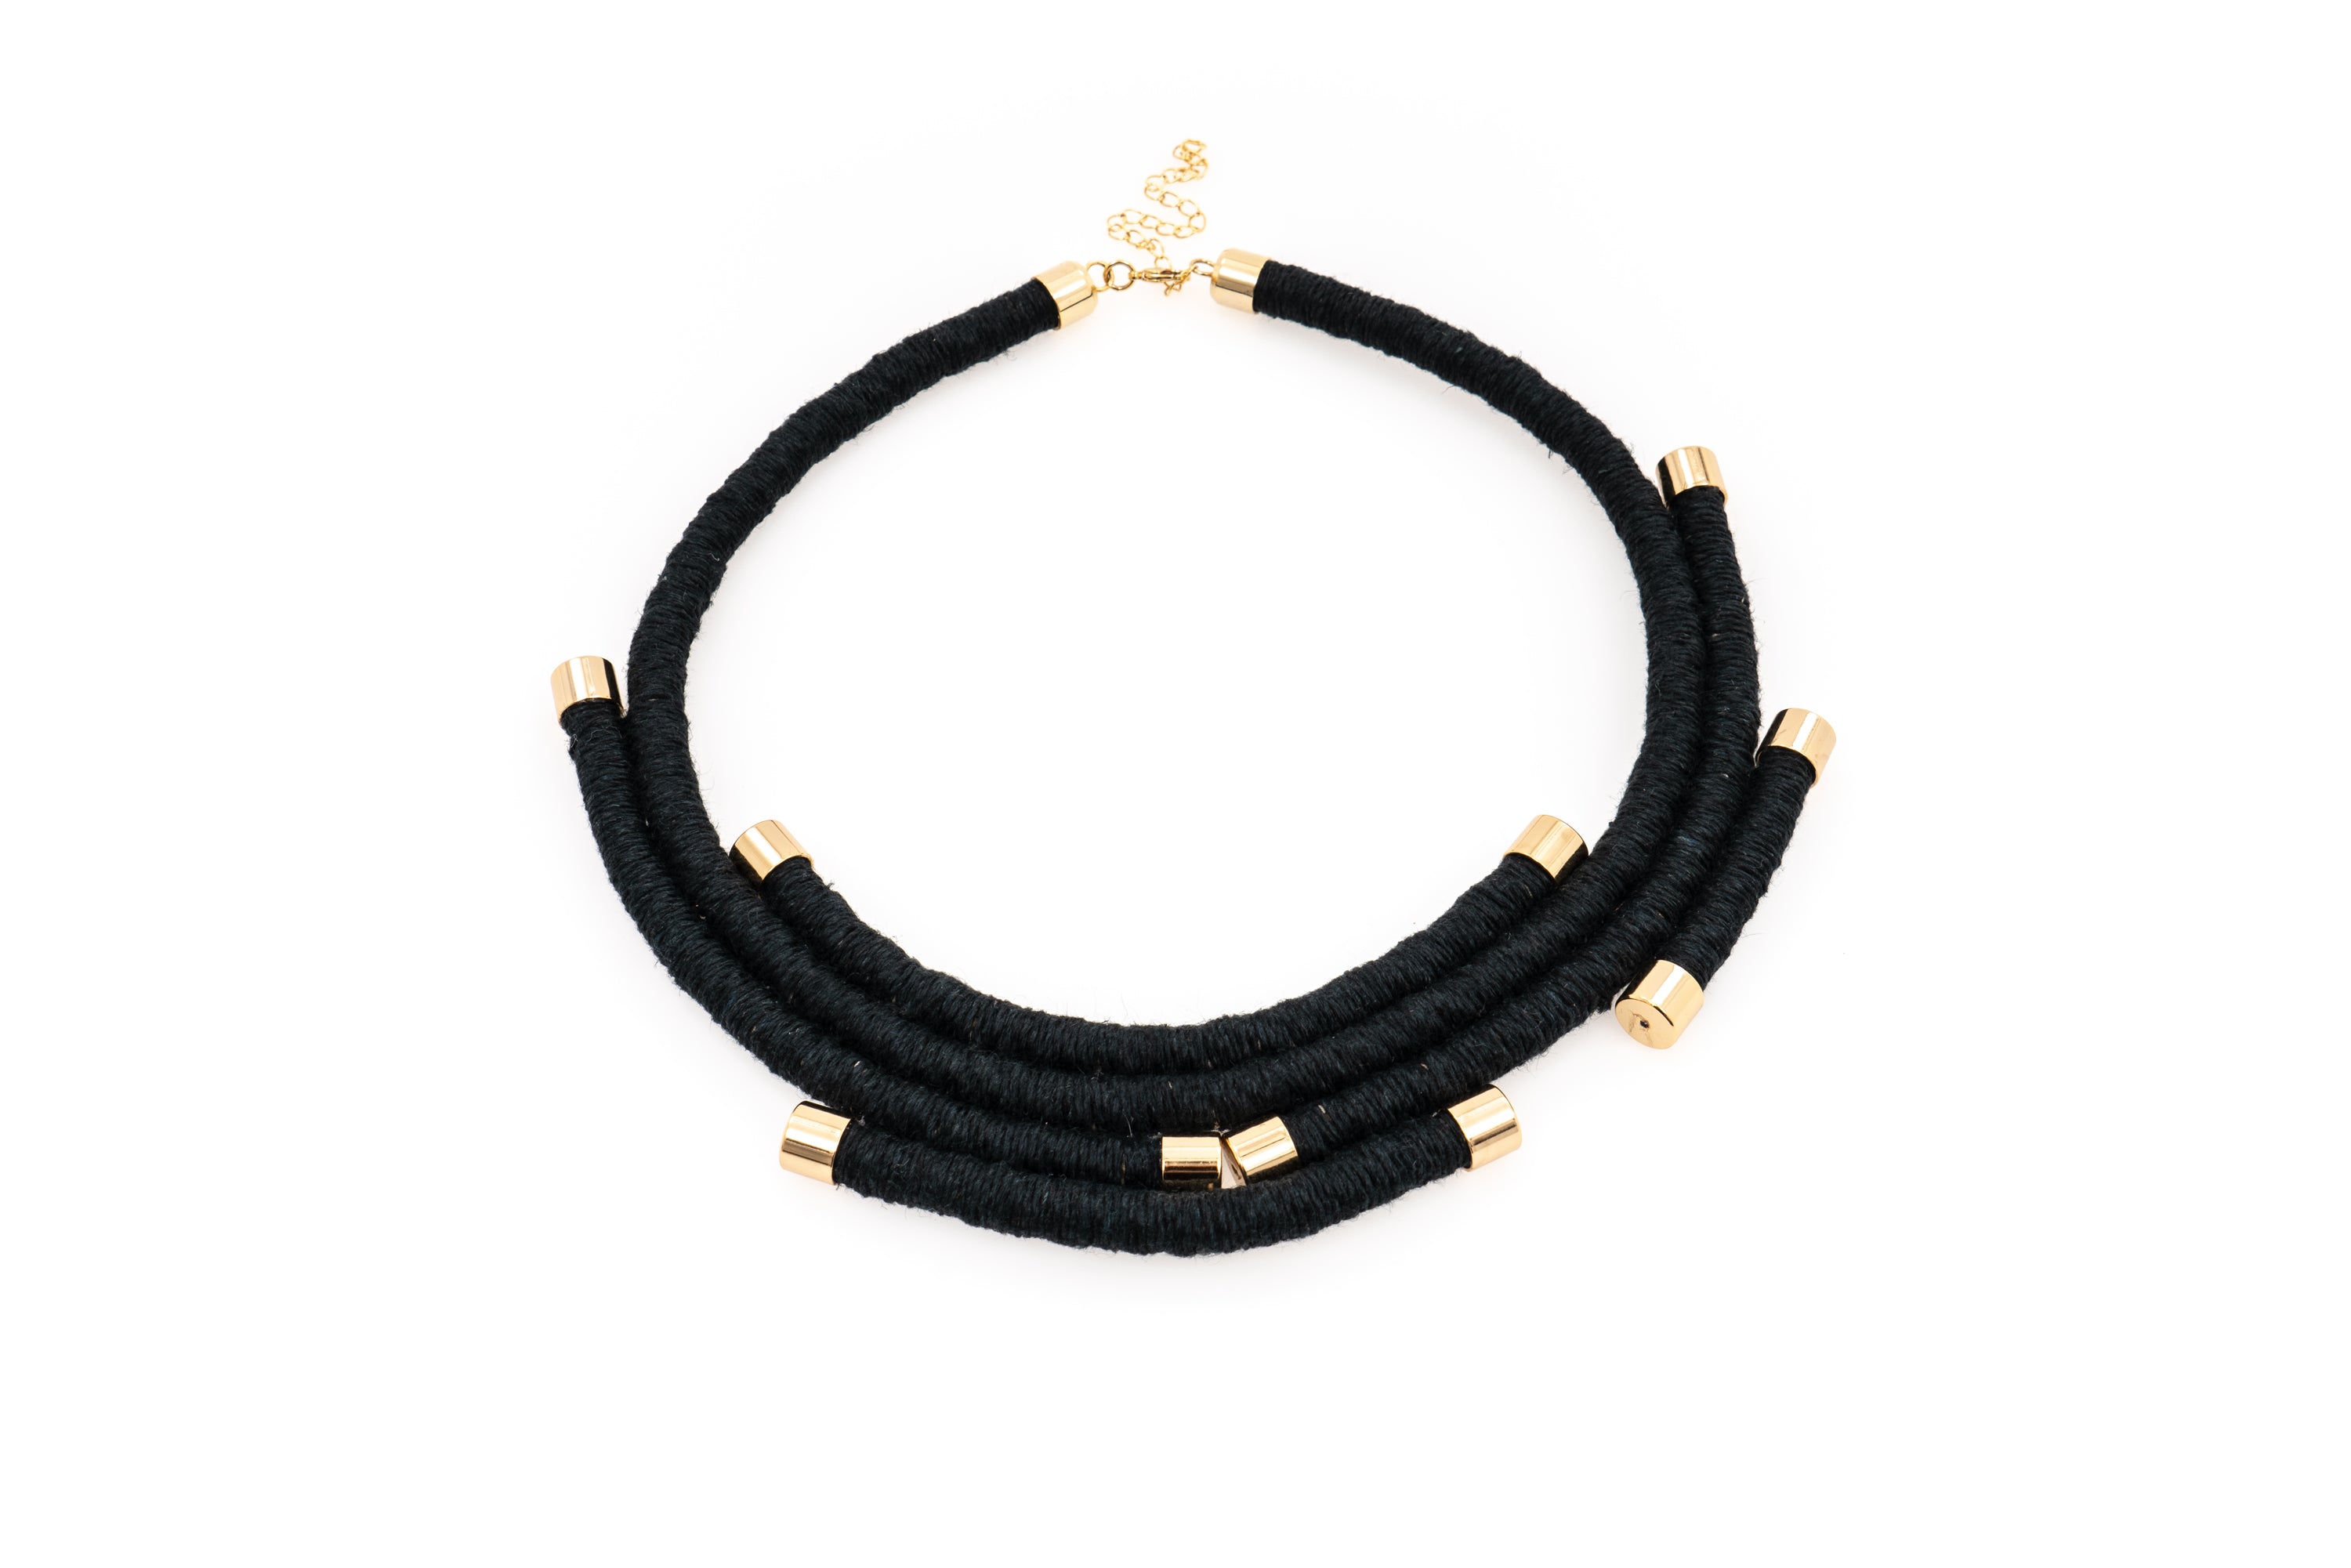 Fiber Art Jewelry Hemp Wrapped Choker Necklace in Black